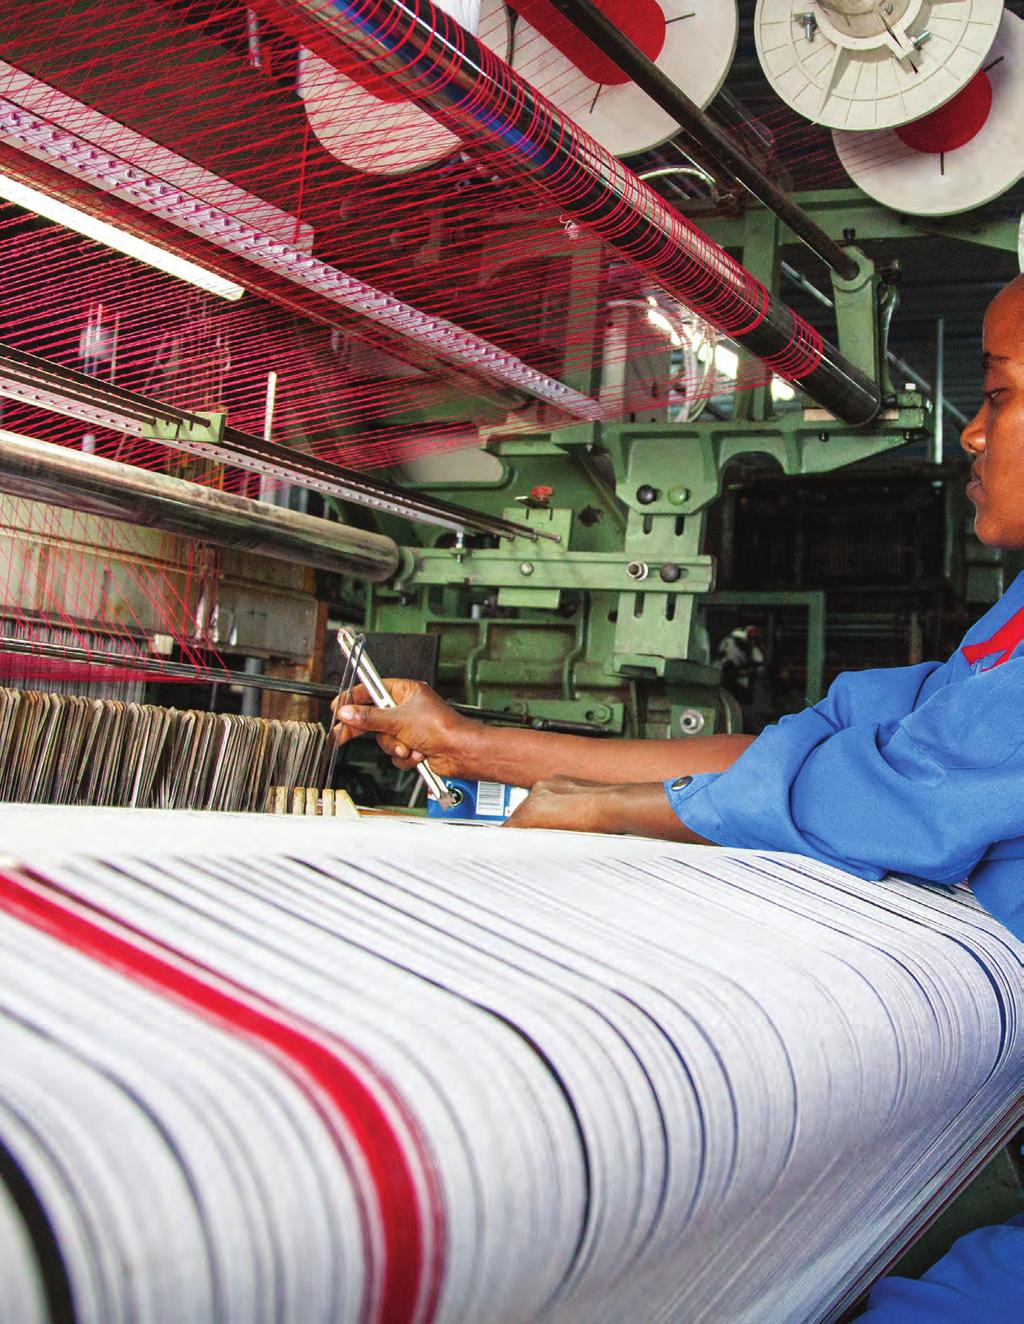 Manufacturing fdi in Sub-Saharan